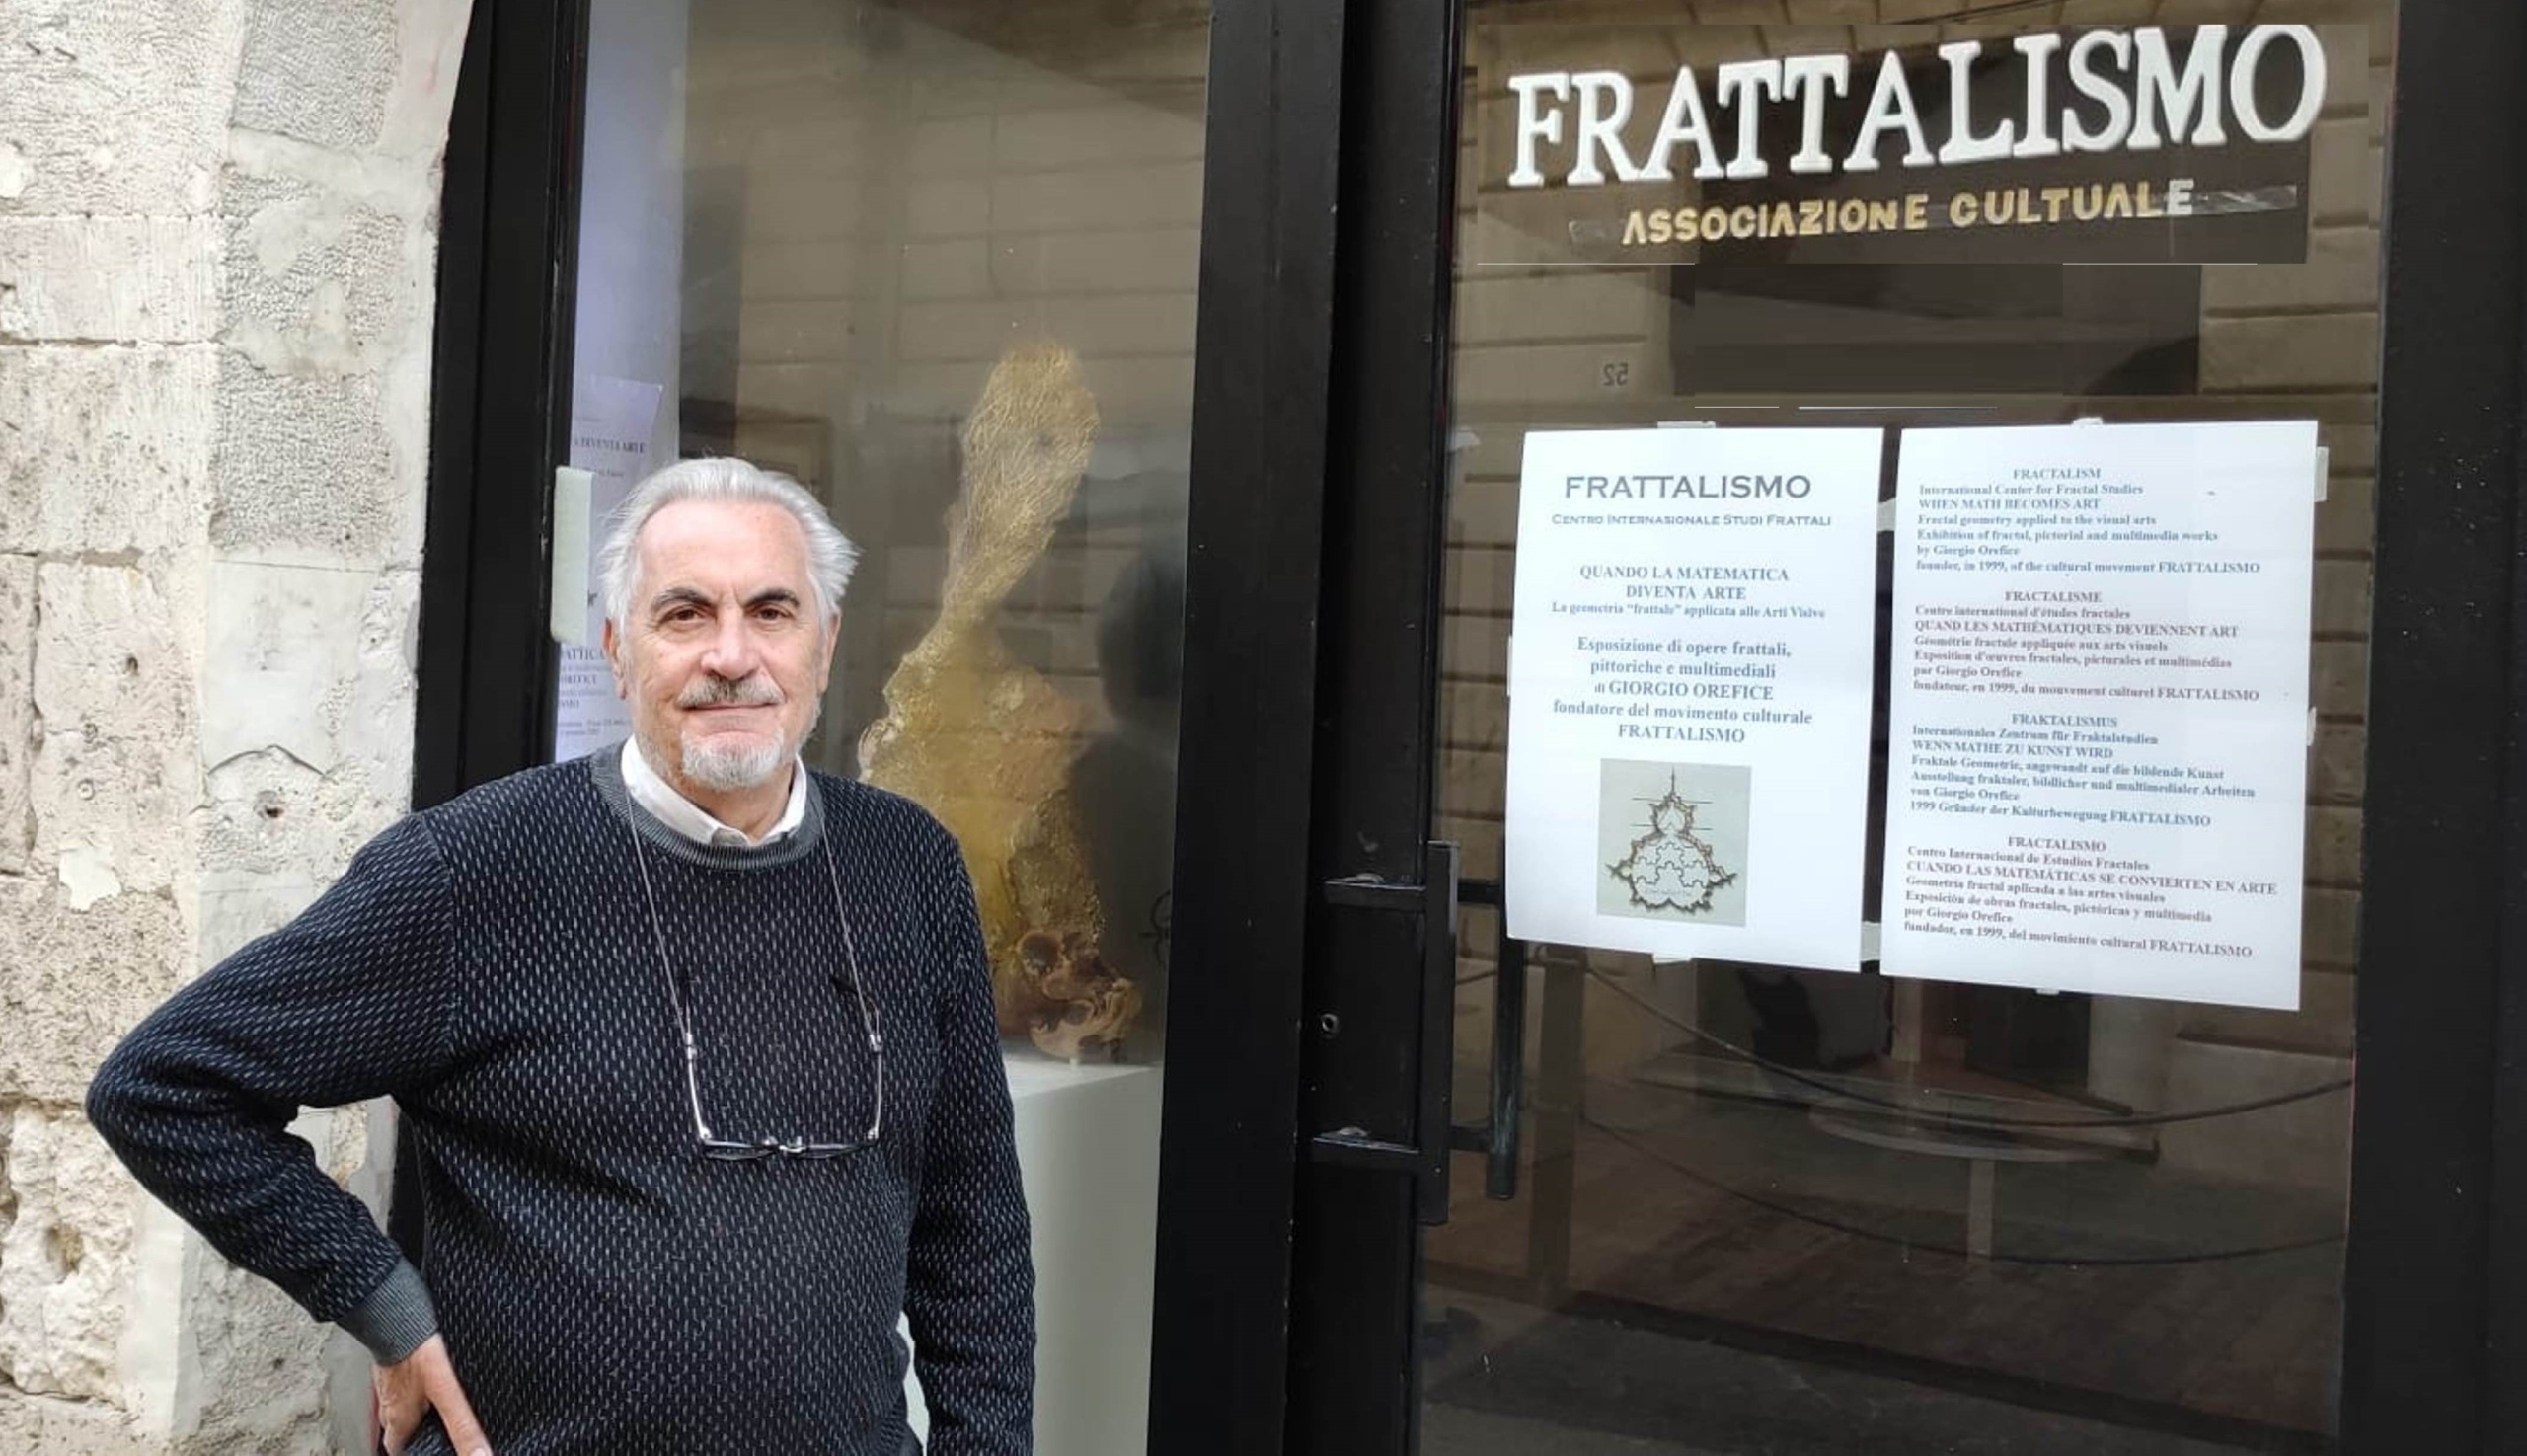 Apre ad Ortigia una galleria sul “frattalismo” del pittore siracusano Giorgio Orefice